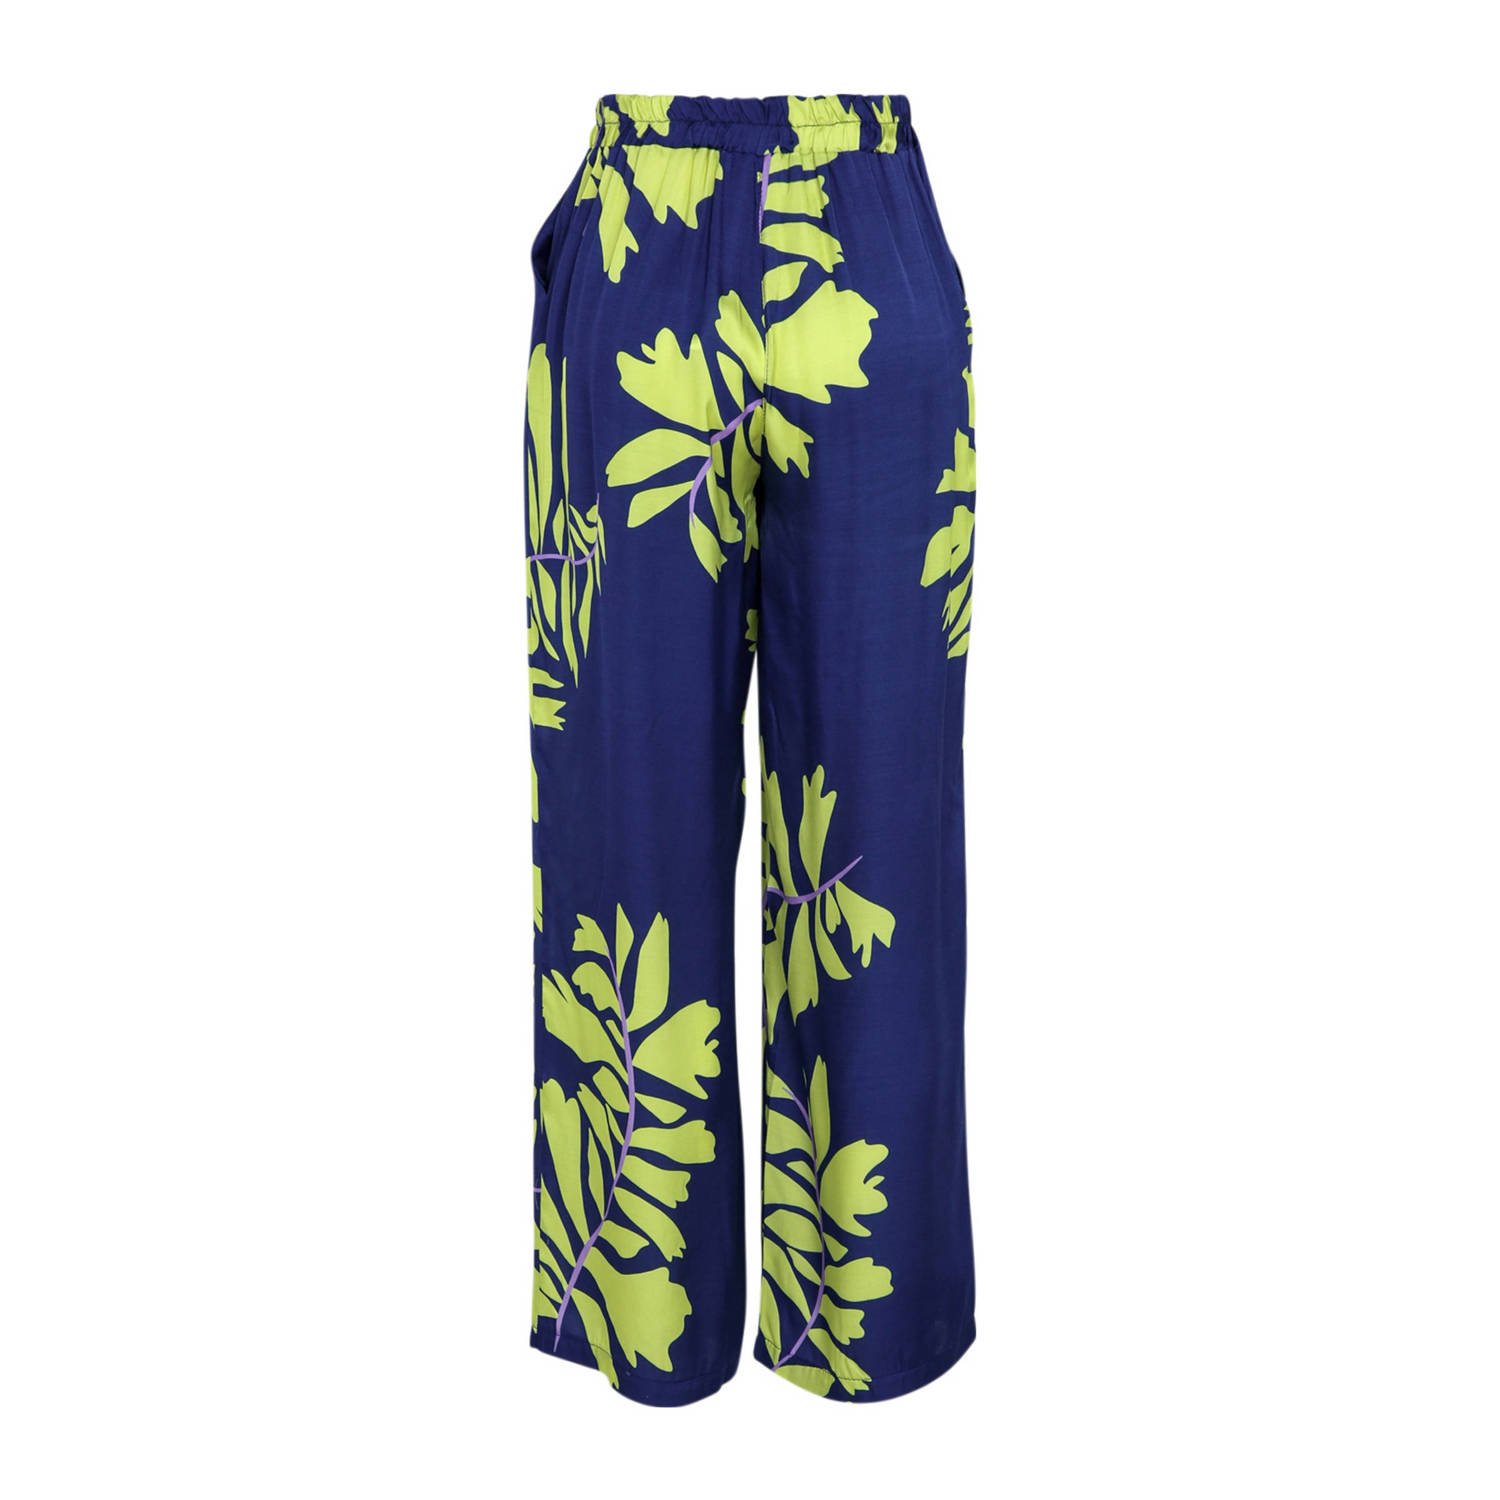 Cassis high waist wide leg pantalon met all over print donkerblauw limegroen